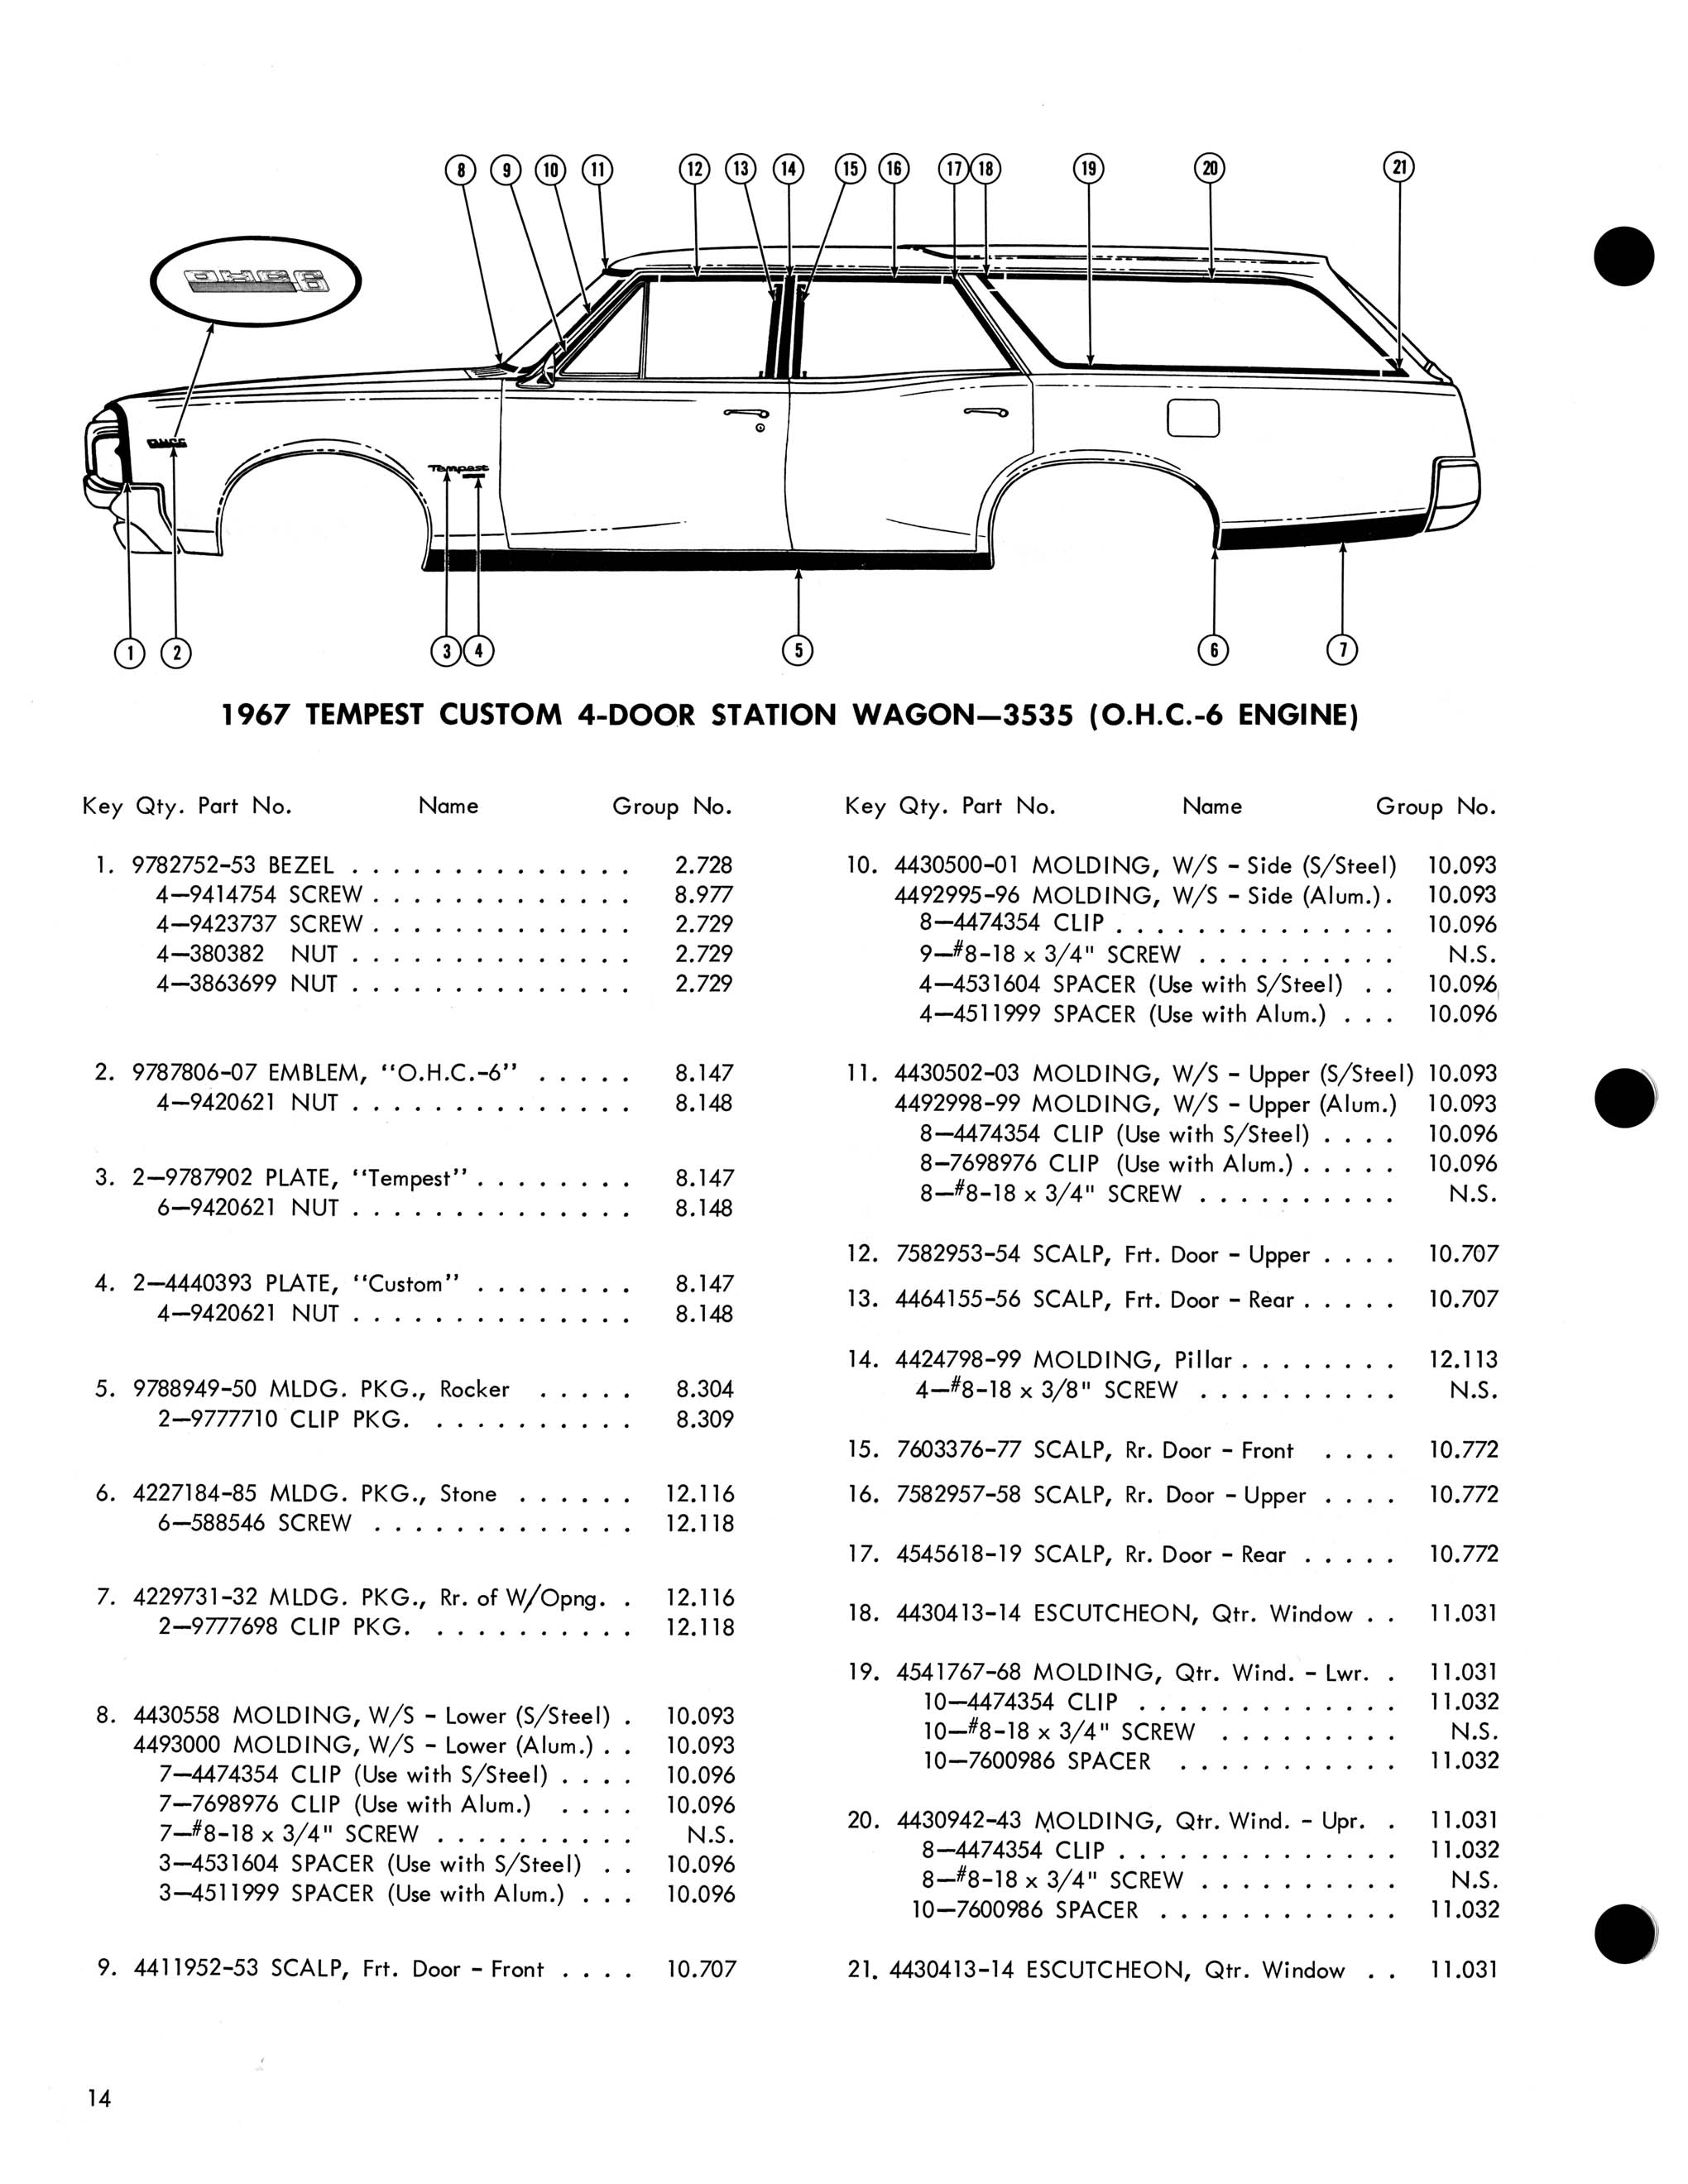 1967 Pontiac Molding and Clip Catalog-14